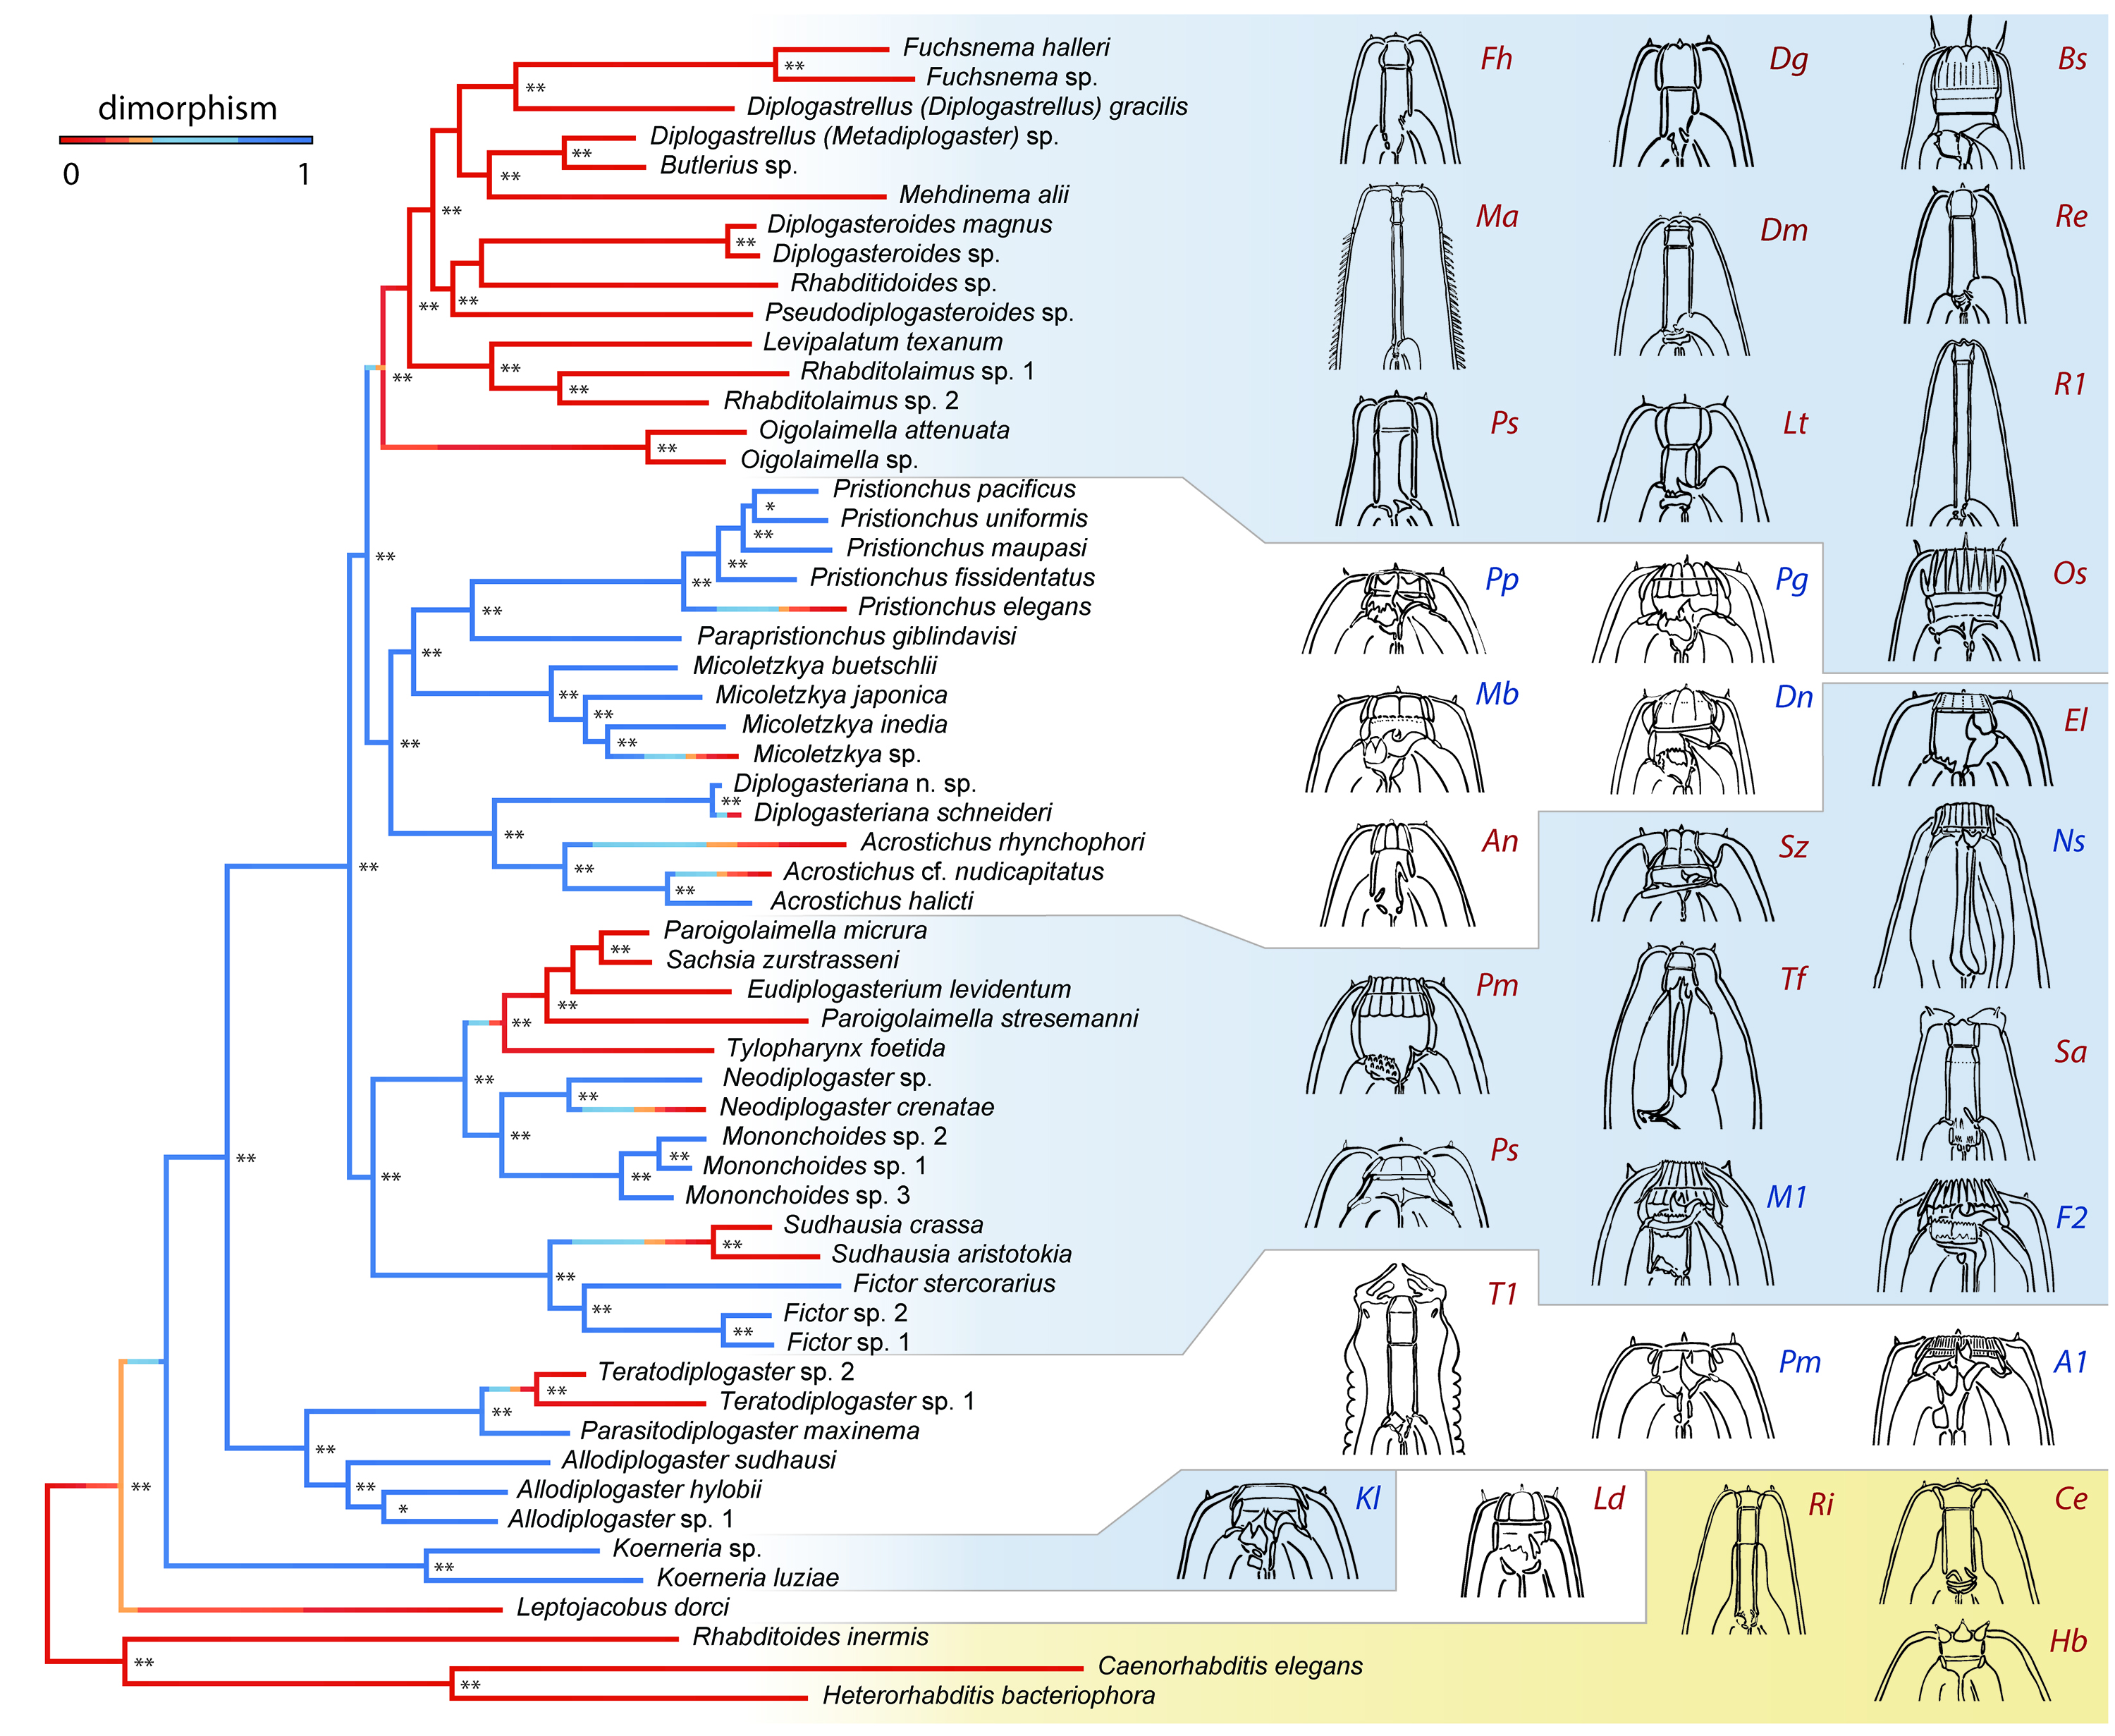 Phylogeny of Diplogastridae